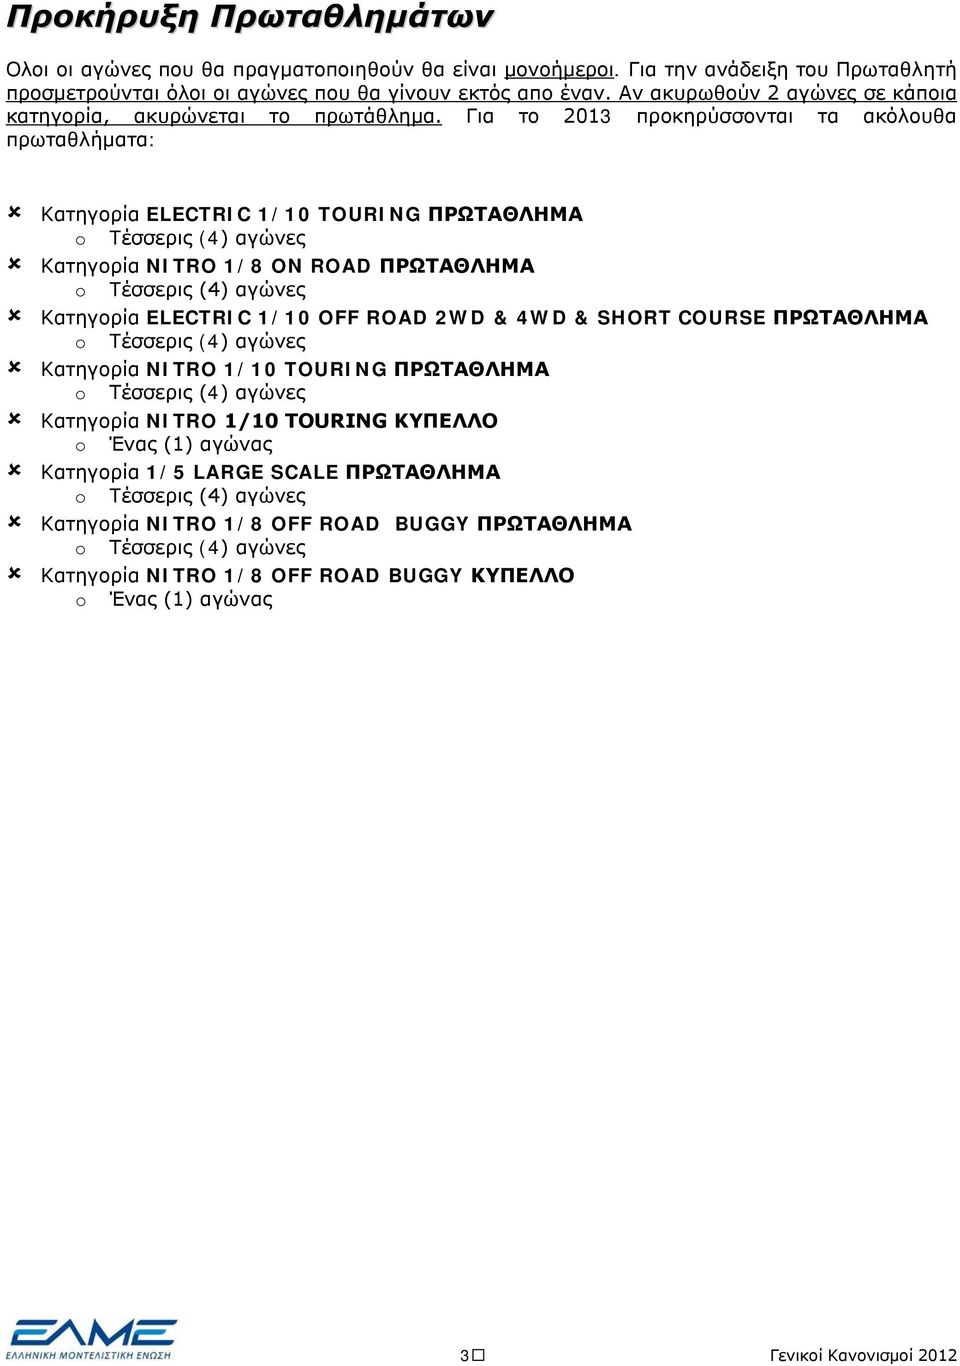 Για το 2013 προκηρύσσονται τα ακόλουθα πρωταθλήματα: Κατηγορία ELECTRIC 1/10 TOURING ΠΡΩΤΑΘΛΗΜΑ o Tέσσερις (4) αγώνες Κατηγορία NITRO 1/8 ON ROAD ΠΡΩΤΑΘΛΗΜΑ o Tέσσερις (4) αγώνες Κατηγορία ELECTRIC